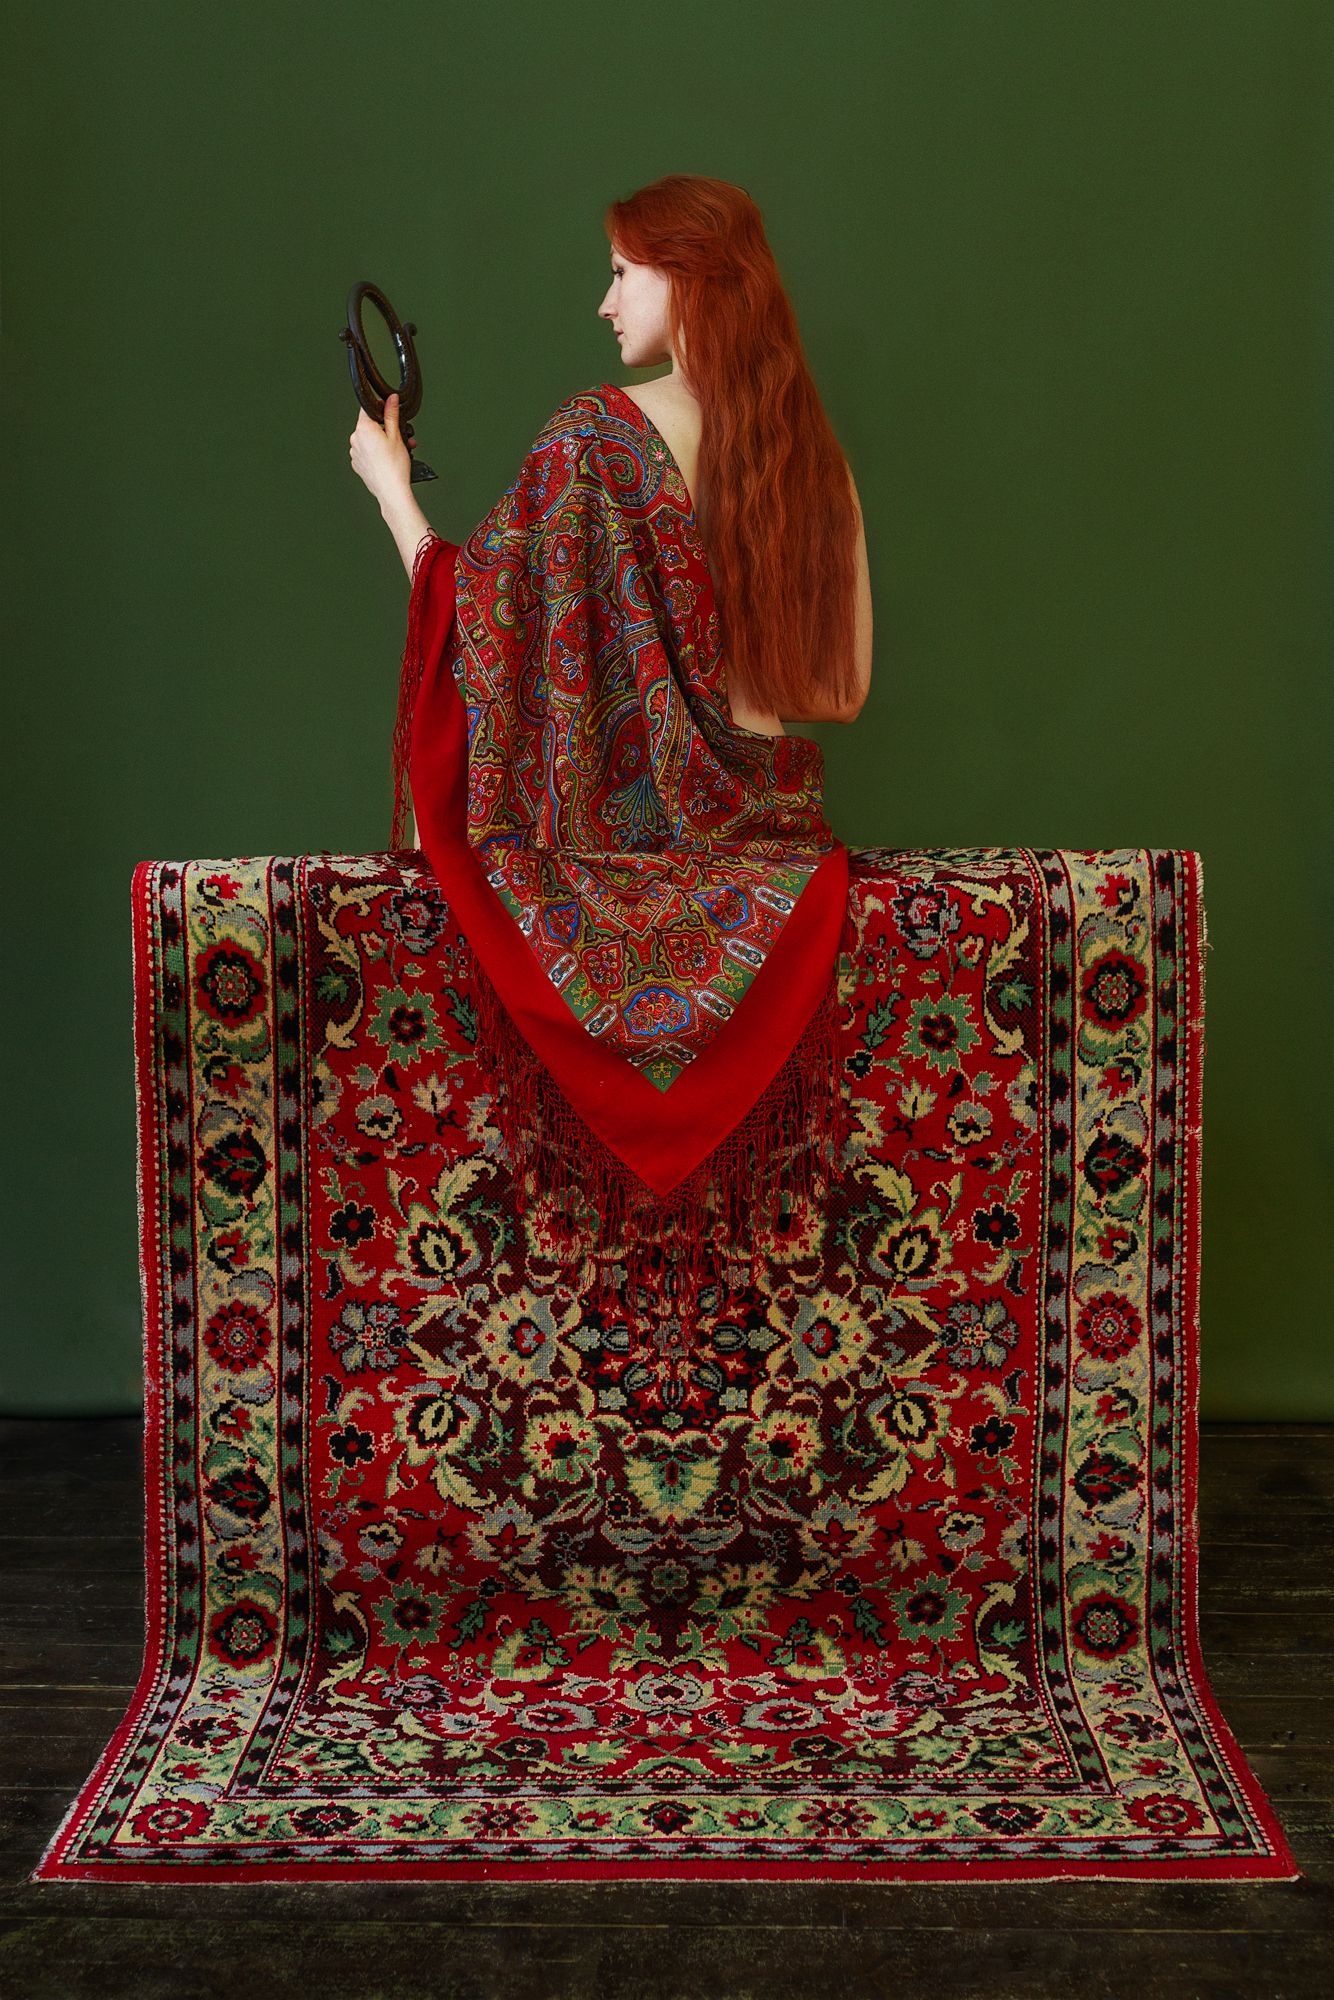 портрет, лицо, женщина, 35мм, цвет, печать, рыжая, длинные волосы, арт, Ведмеденко Оксана